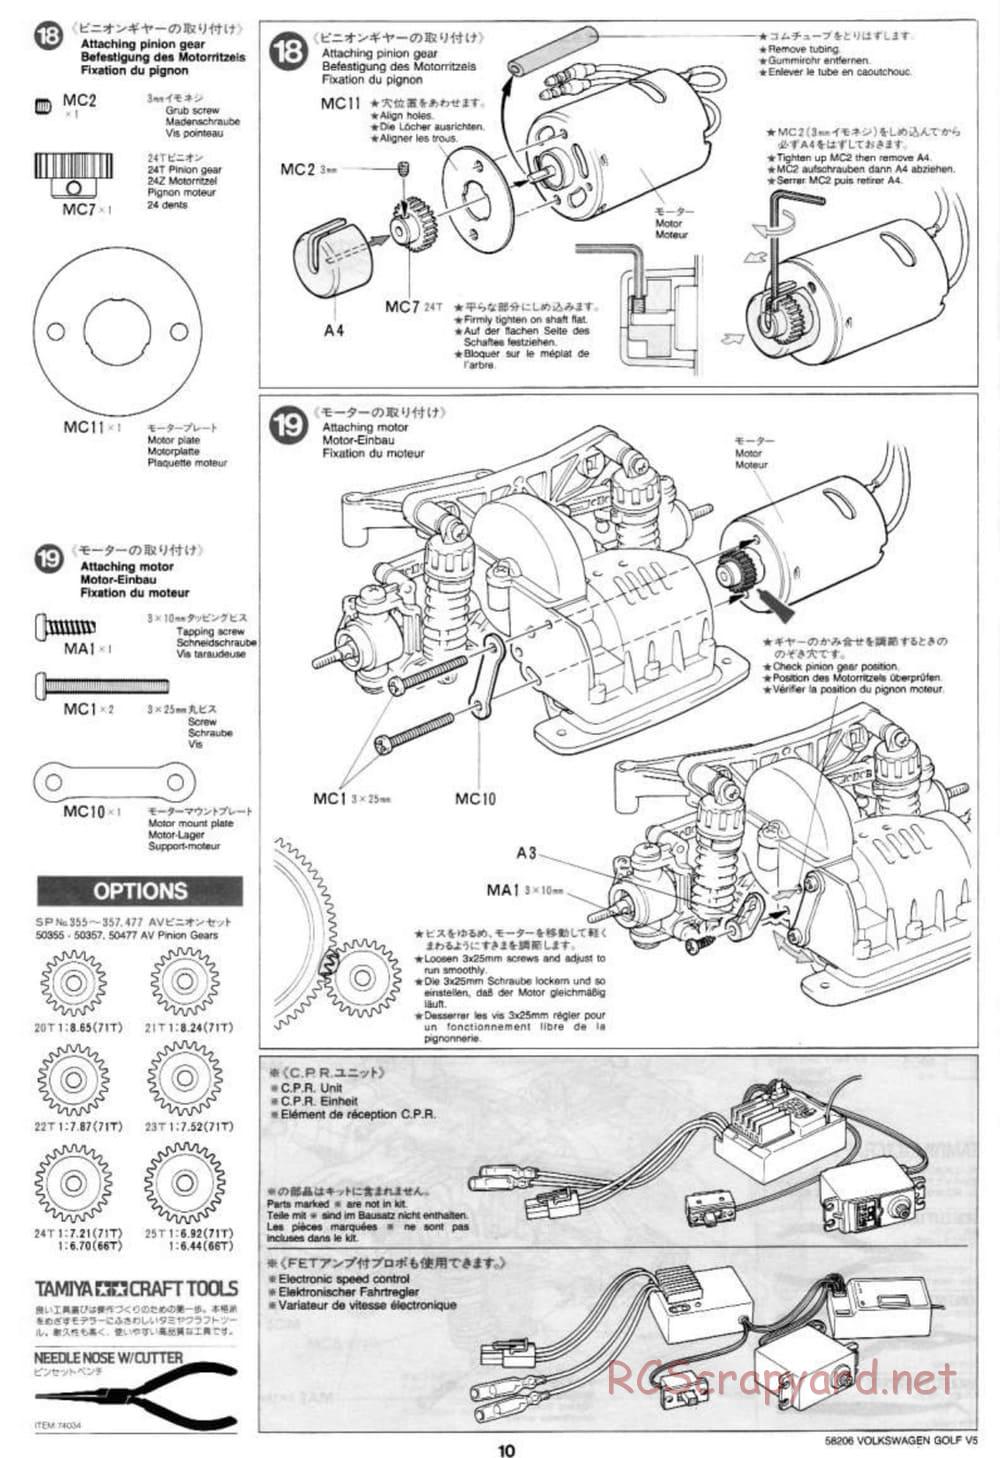 Tamiya - Volkswagen Golf V5 - FF-01 Chassis - Manual - Page 10